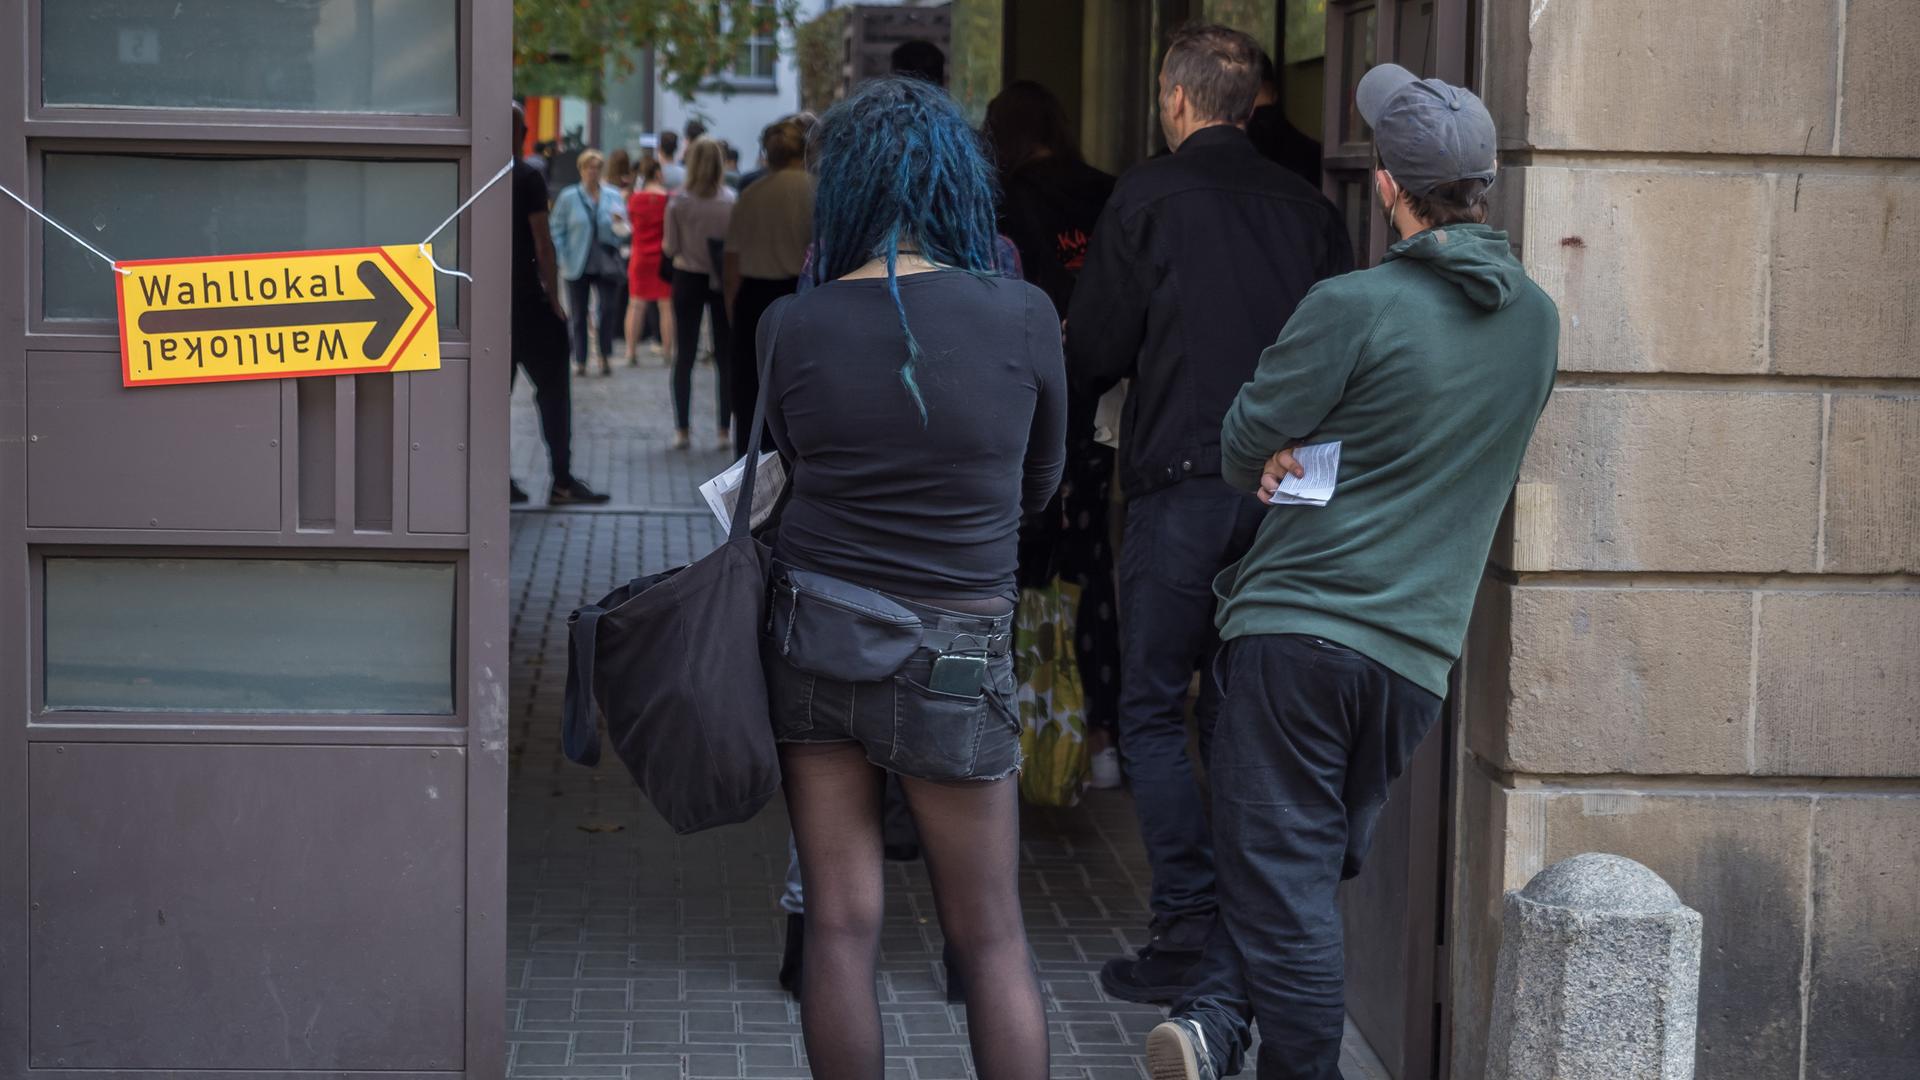 Menschen warten in einer Schlange vor einem Wahllokal im Berliner Stadtteil Prenzlauer Berg darauf, ihre Stimmen zu Bundestags- und Abgeordnetenhauswahl sowie zur Wahl der Bezirksvertretungen abgeben zu dürfen. Am Ende der Schlange steht eine Frau mit blauen Haaren und schwarzer Kleidung.